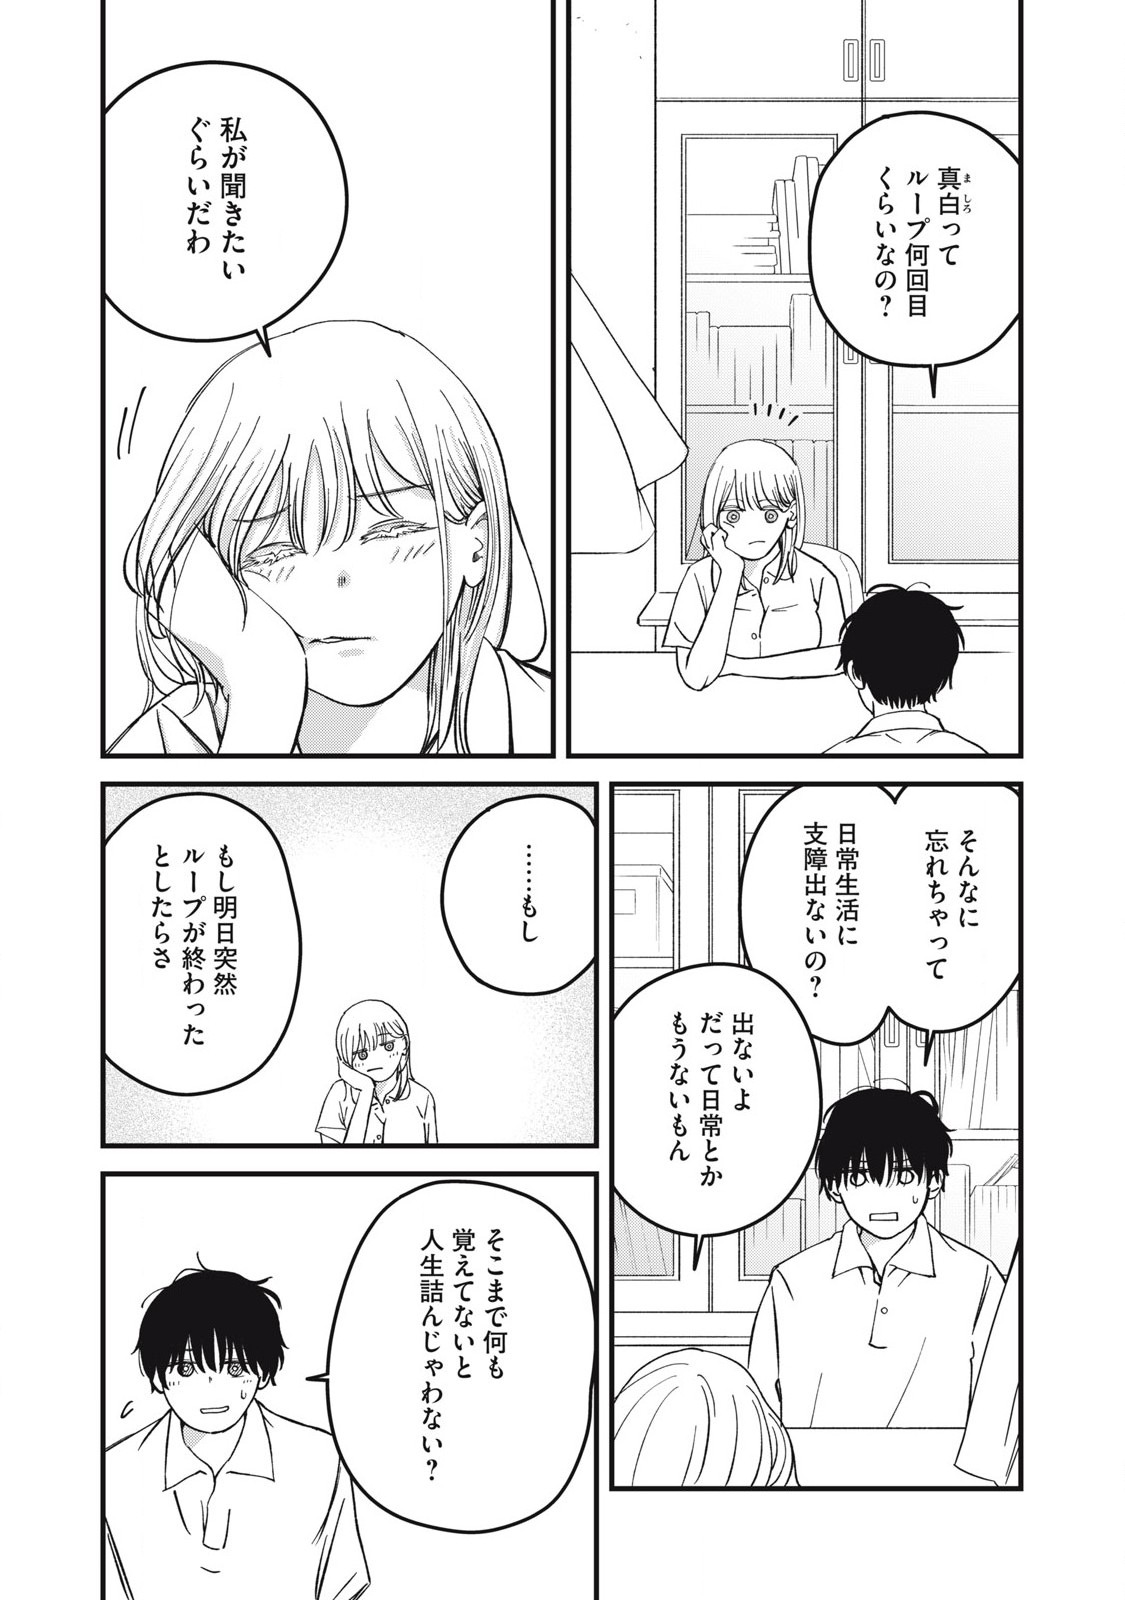 Otona ni Narenai Bokura wa - Chapter 11 - Page 3